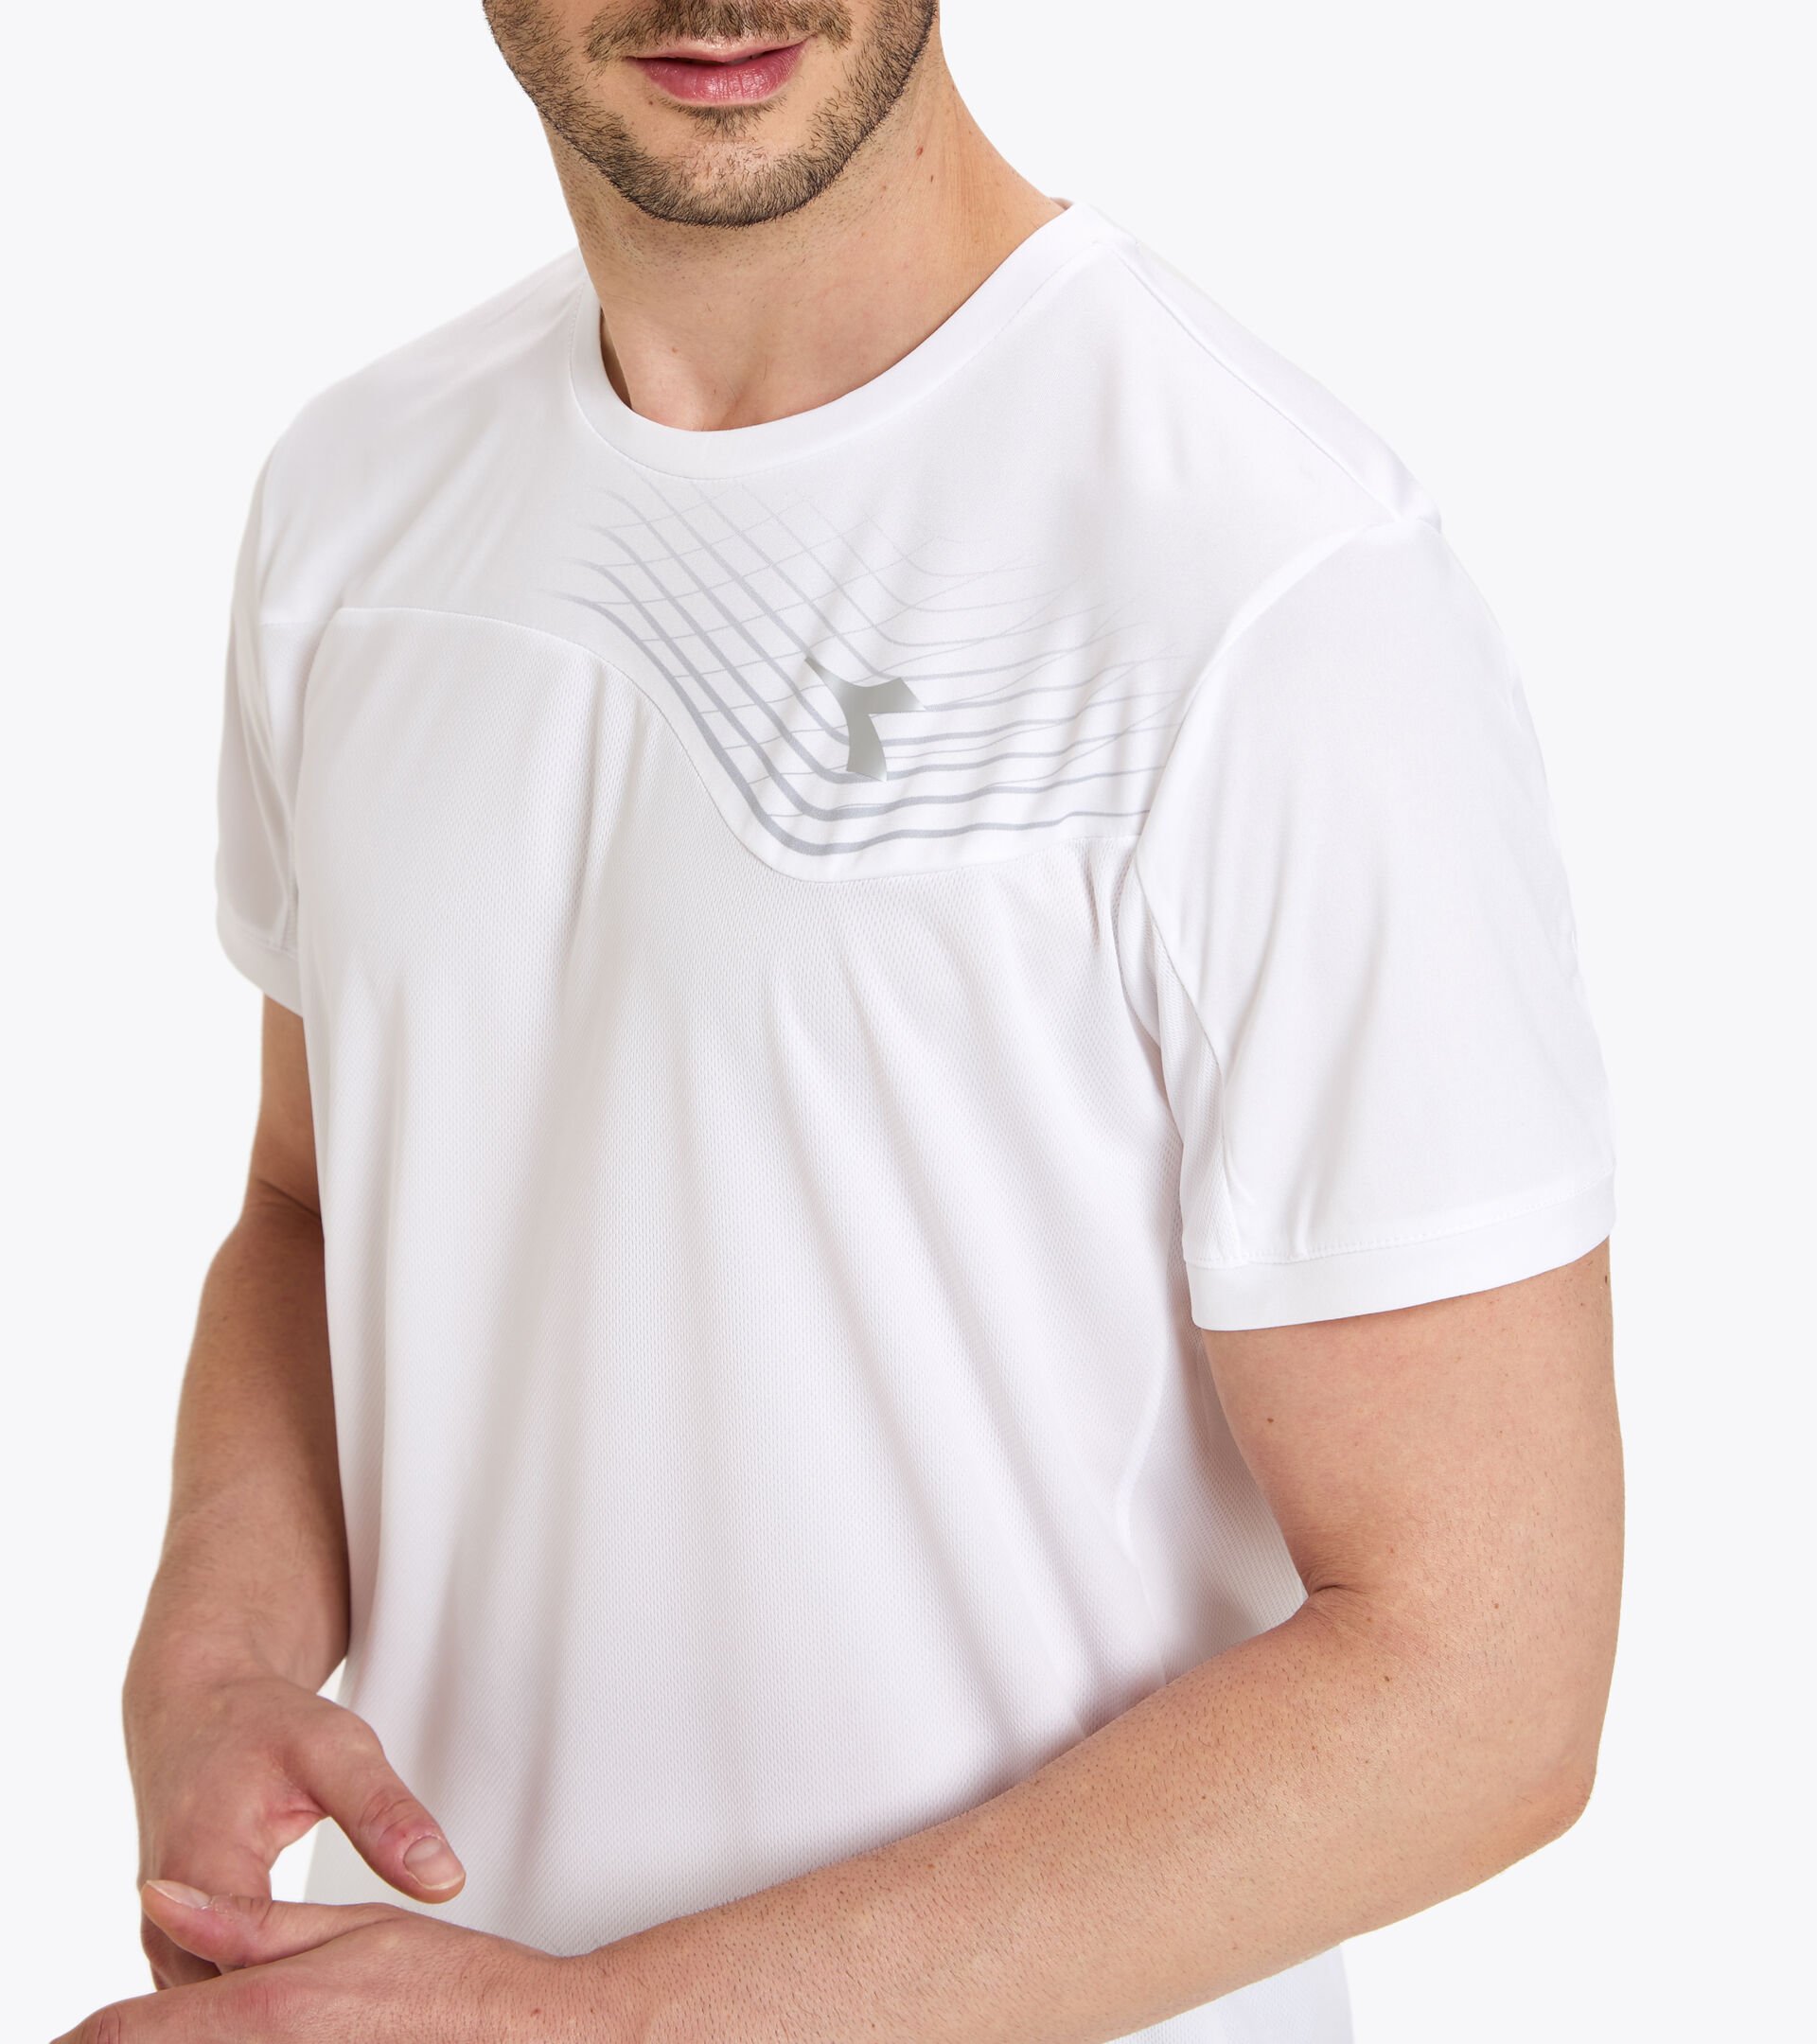 T-shirt de tennis - Homme T-SHIRT COURT BLANC VIF - Diadora